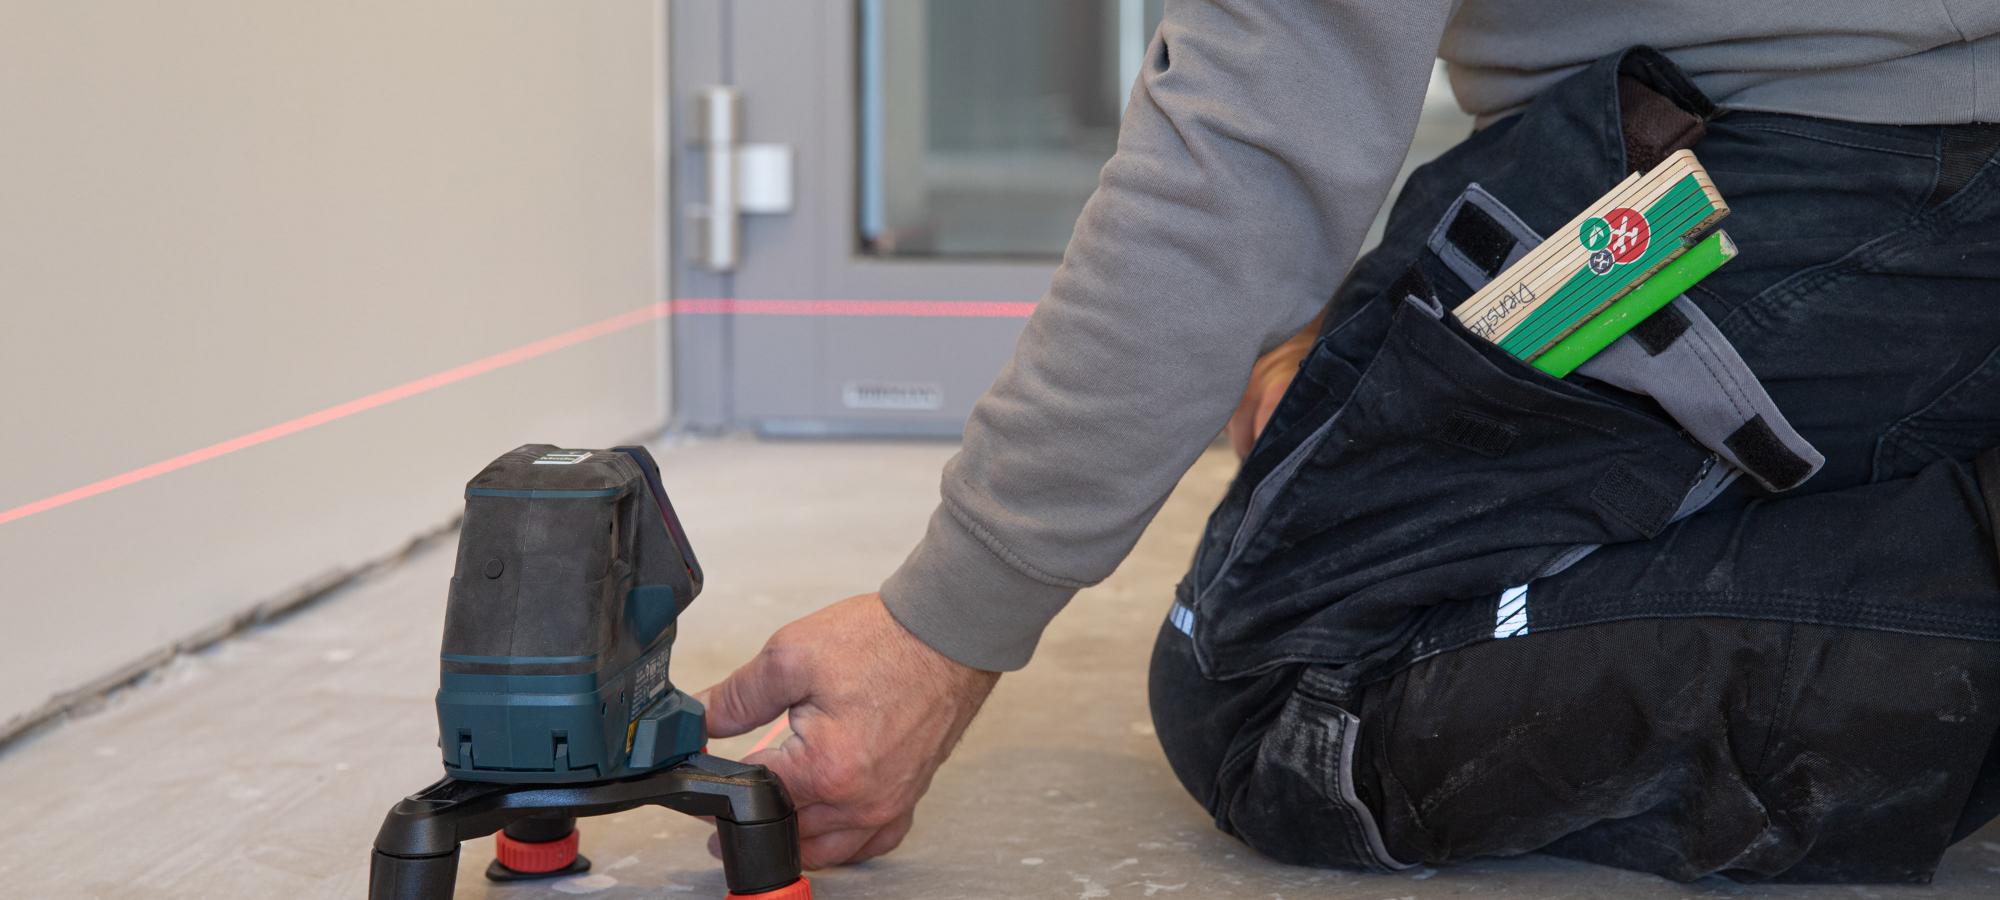 Bildausschnitt zeigt einen Fliesenleger der mittels Lasernivellierer den Boden für Bodenlegearbeiten vorbereitet